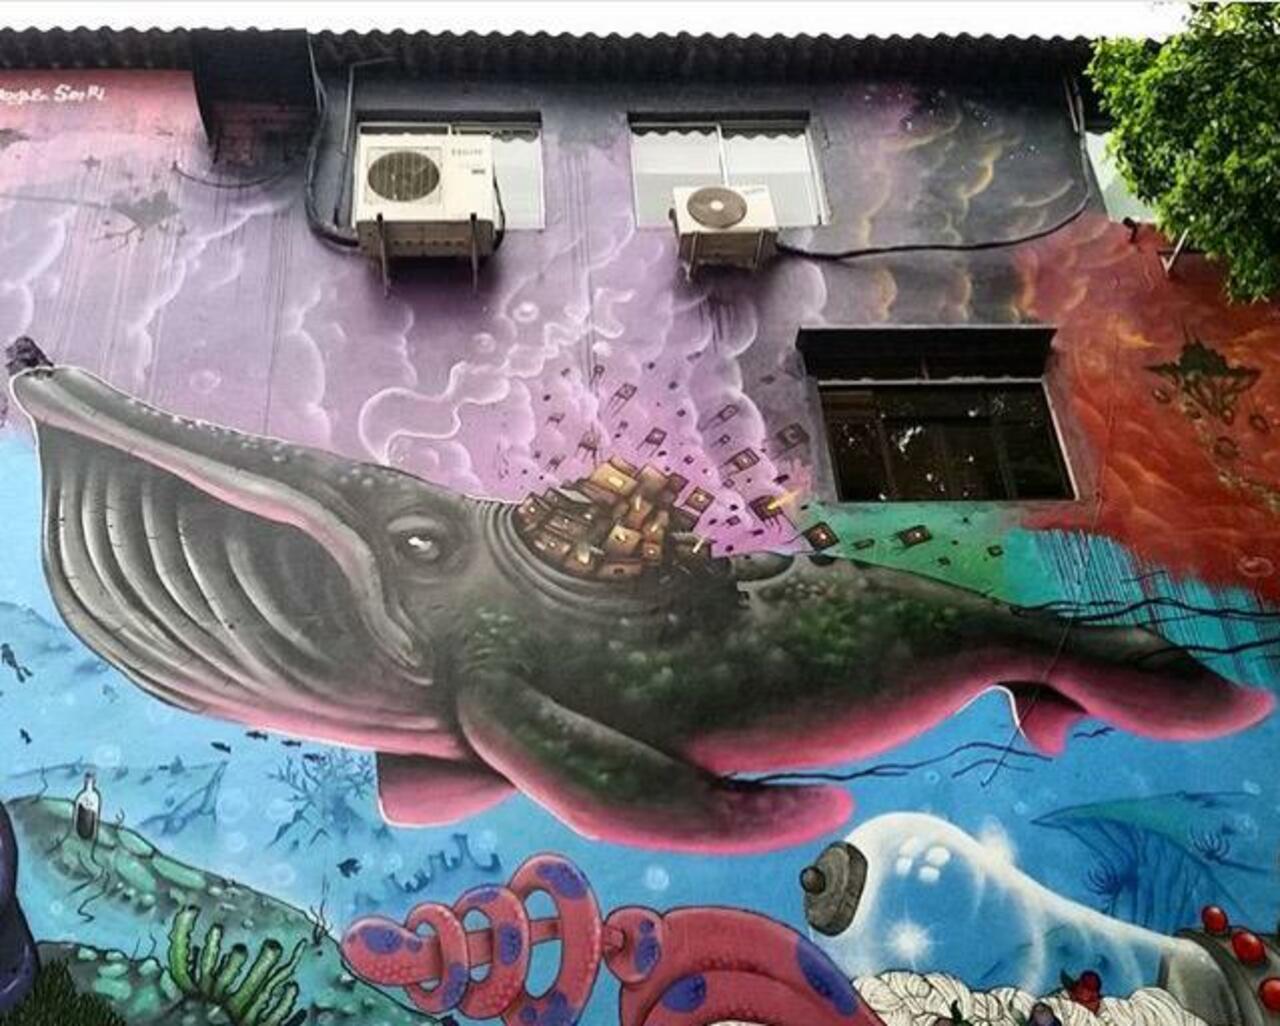 Street Art by joks_johnes Pinheiros, São Paulo 

#art #mural #graffiti #streetart http://t.co/begshTB6bm